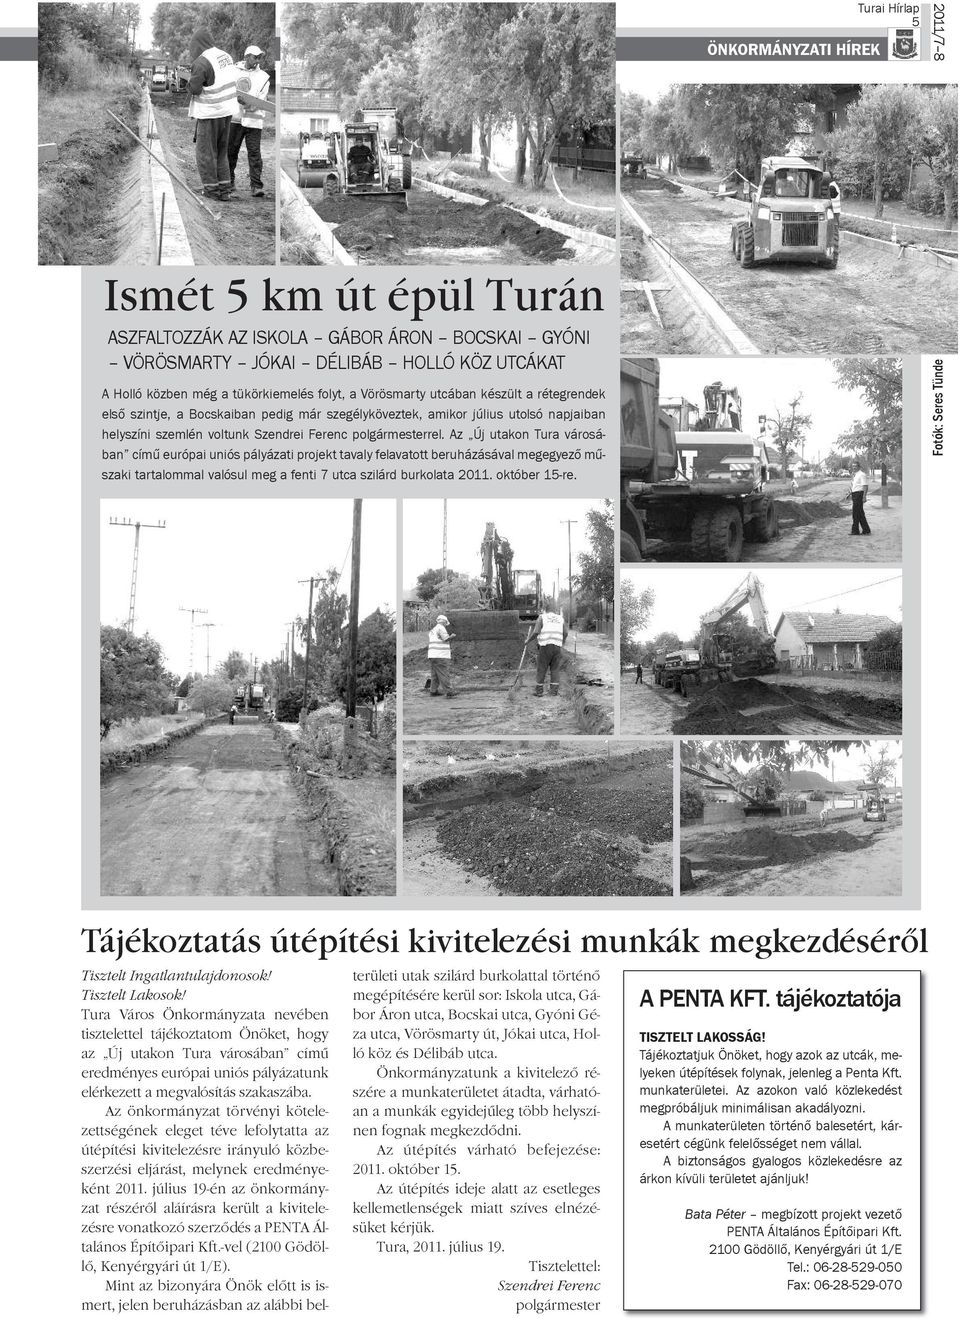 Az Új utakon Tura vá ro sá - ban című európai uniós pályázati projekt tavaly felavatott beruházásával megegyező mű - szaki tartalommal valósul meg a fenti 7 utca szilárd burkolata 2011. október 15-re.